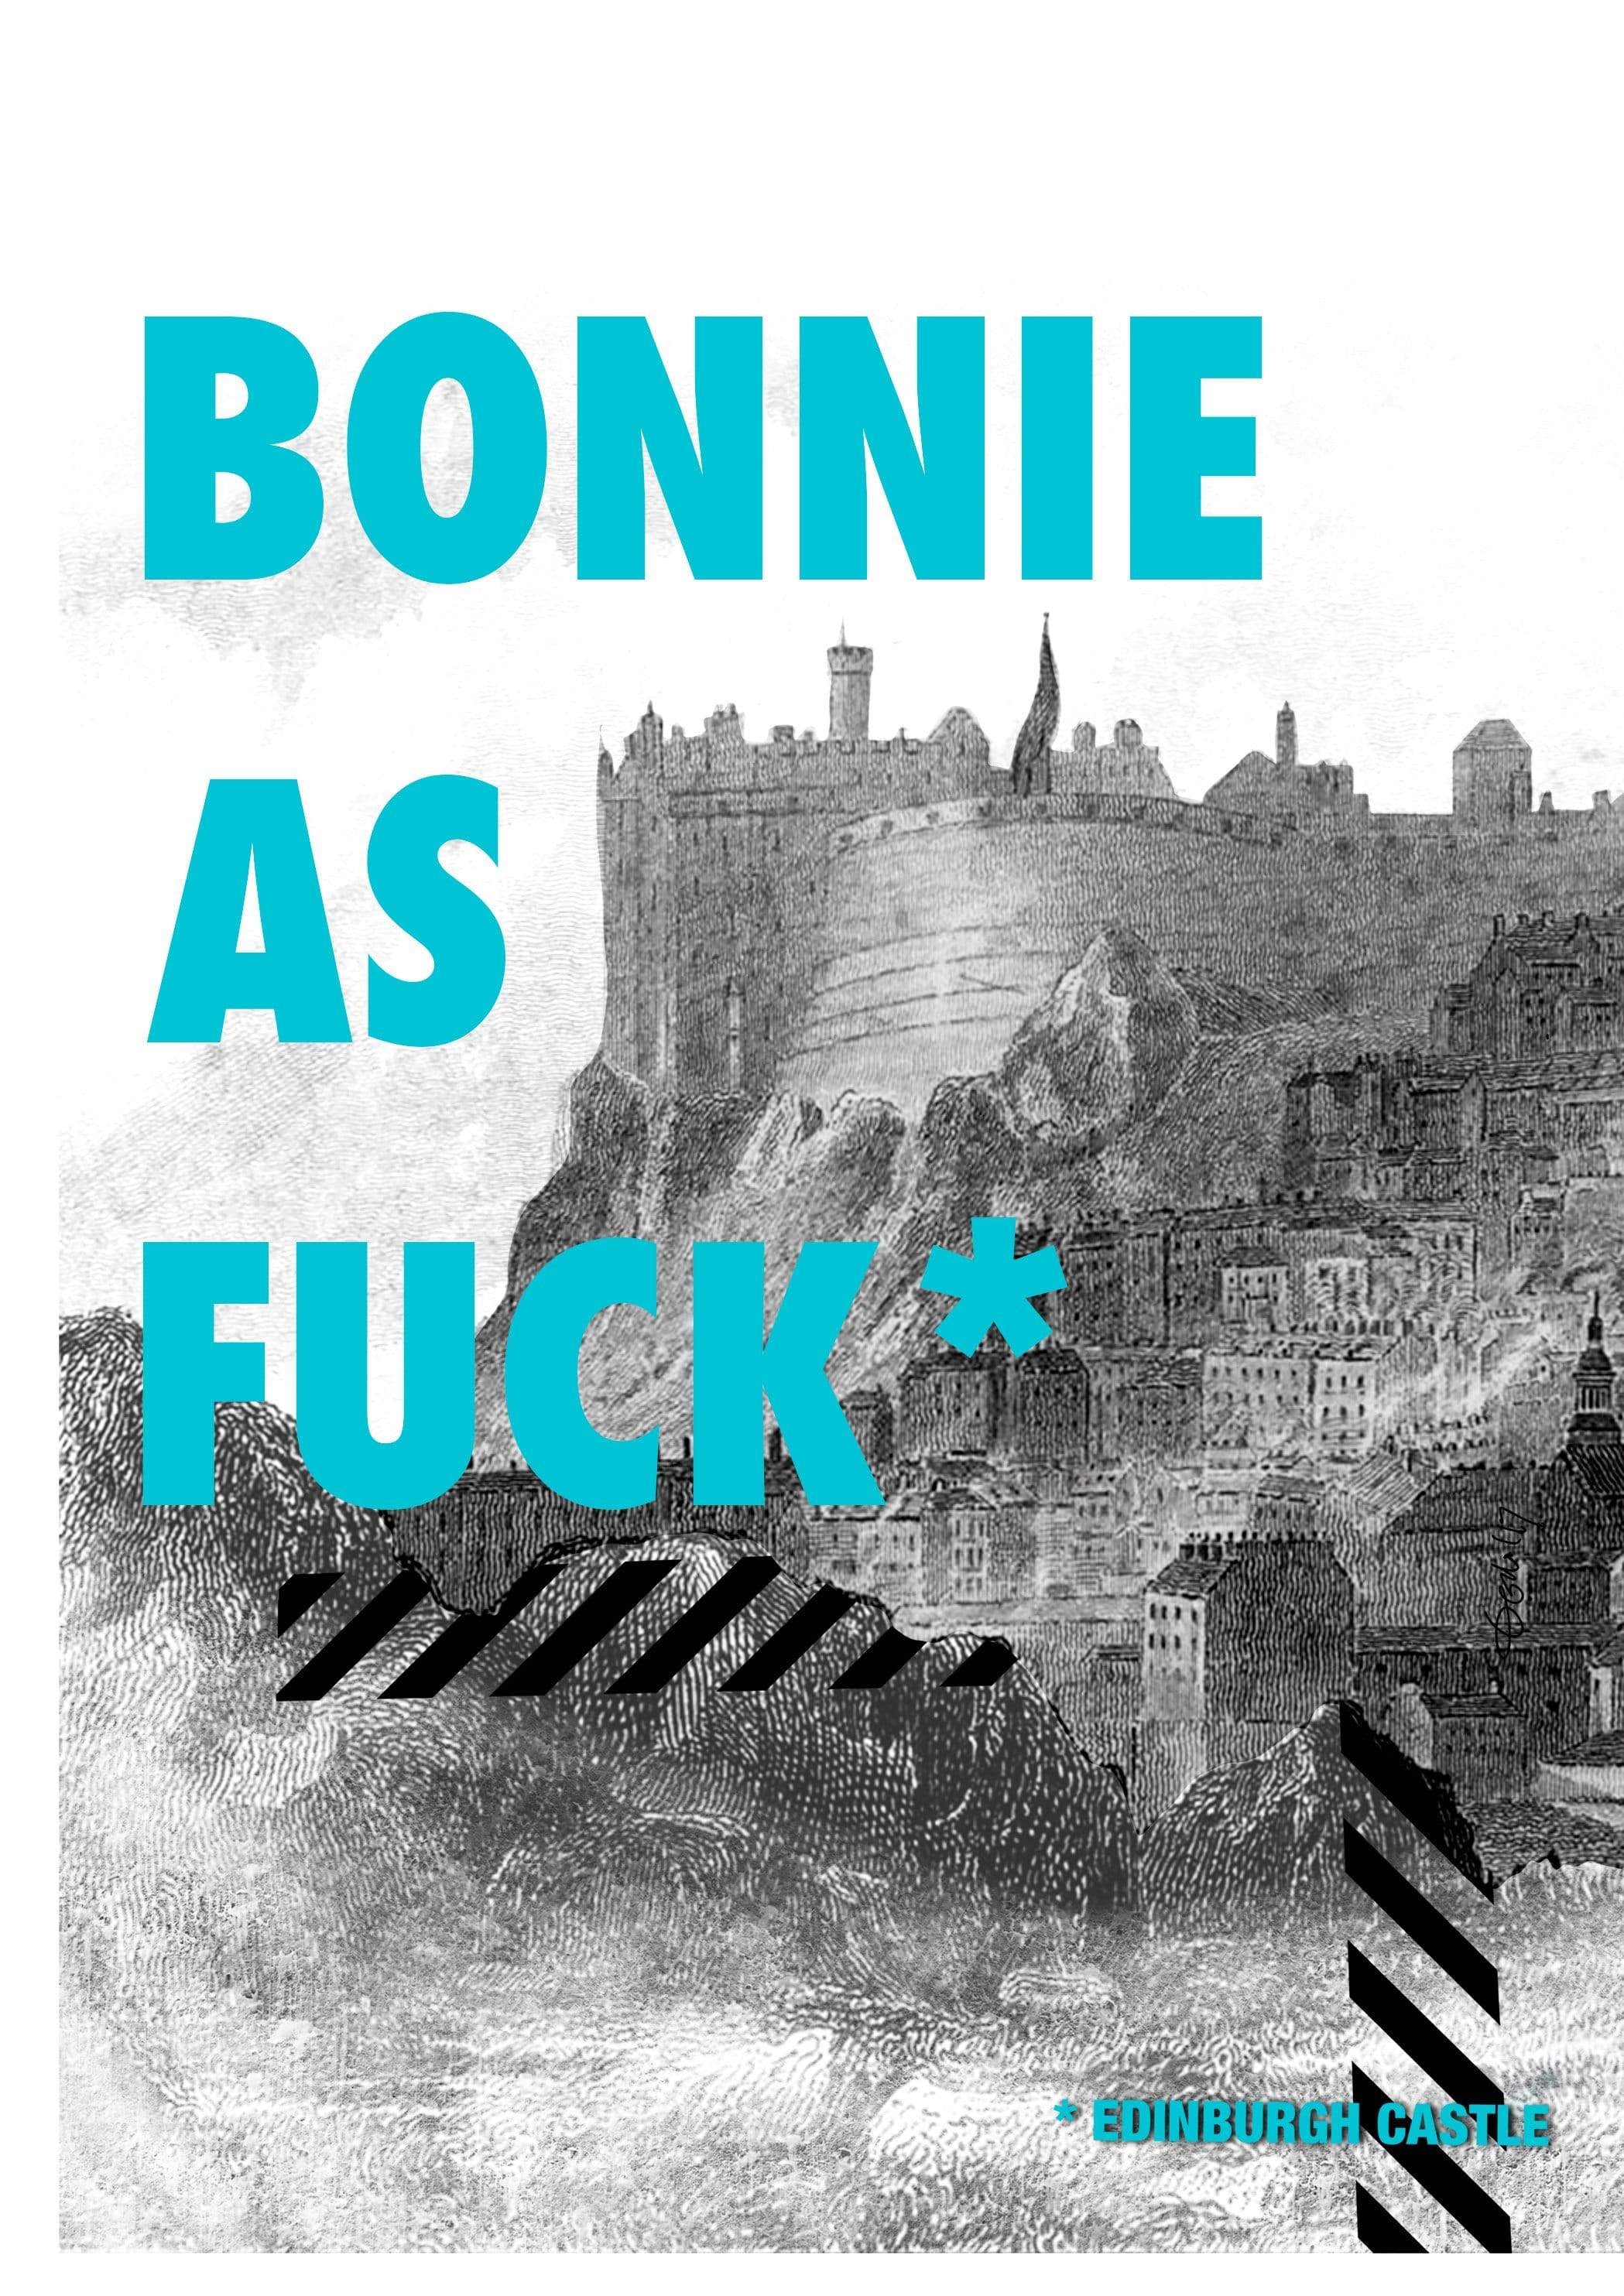 Bonnie Castle Matte Art Print